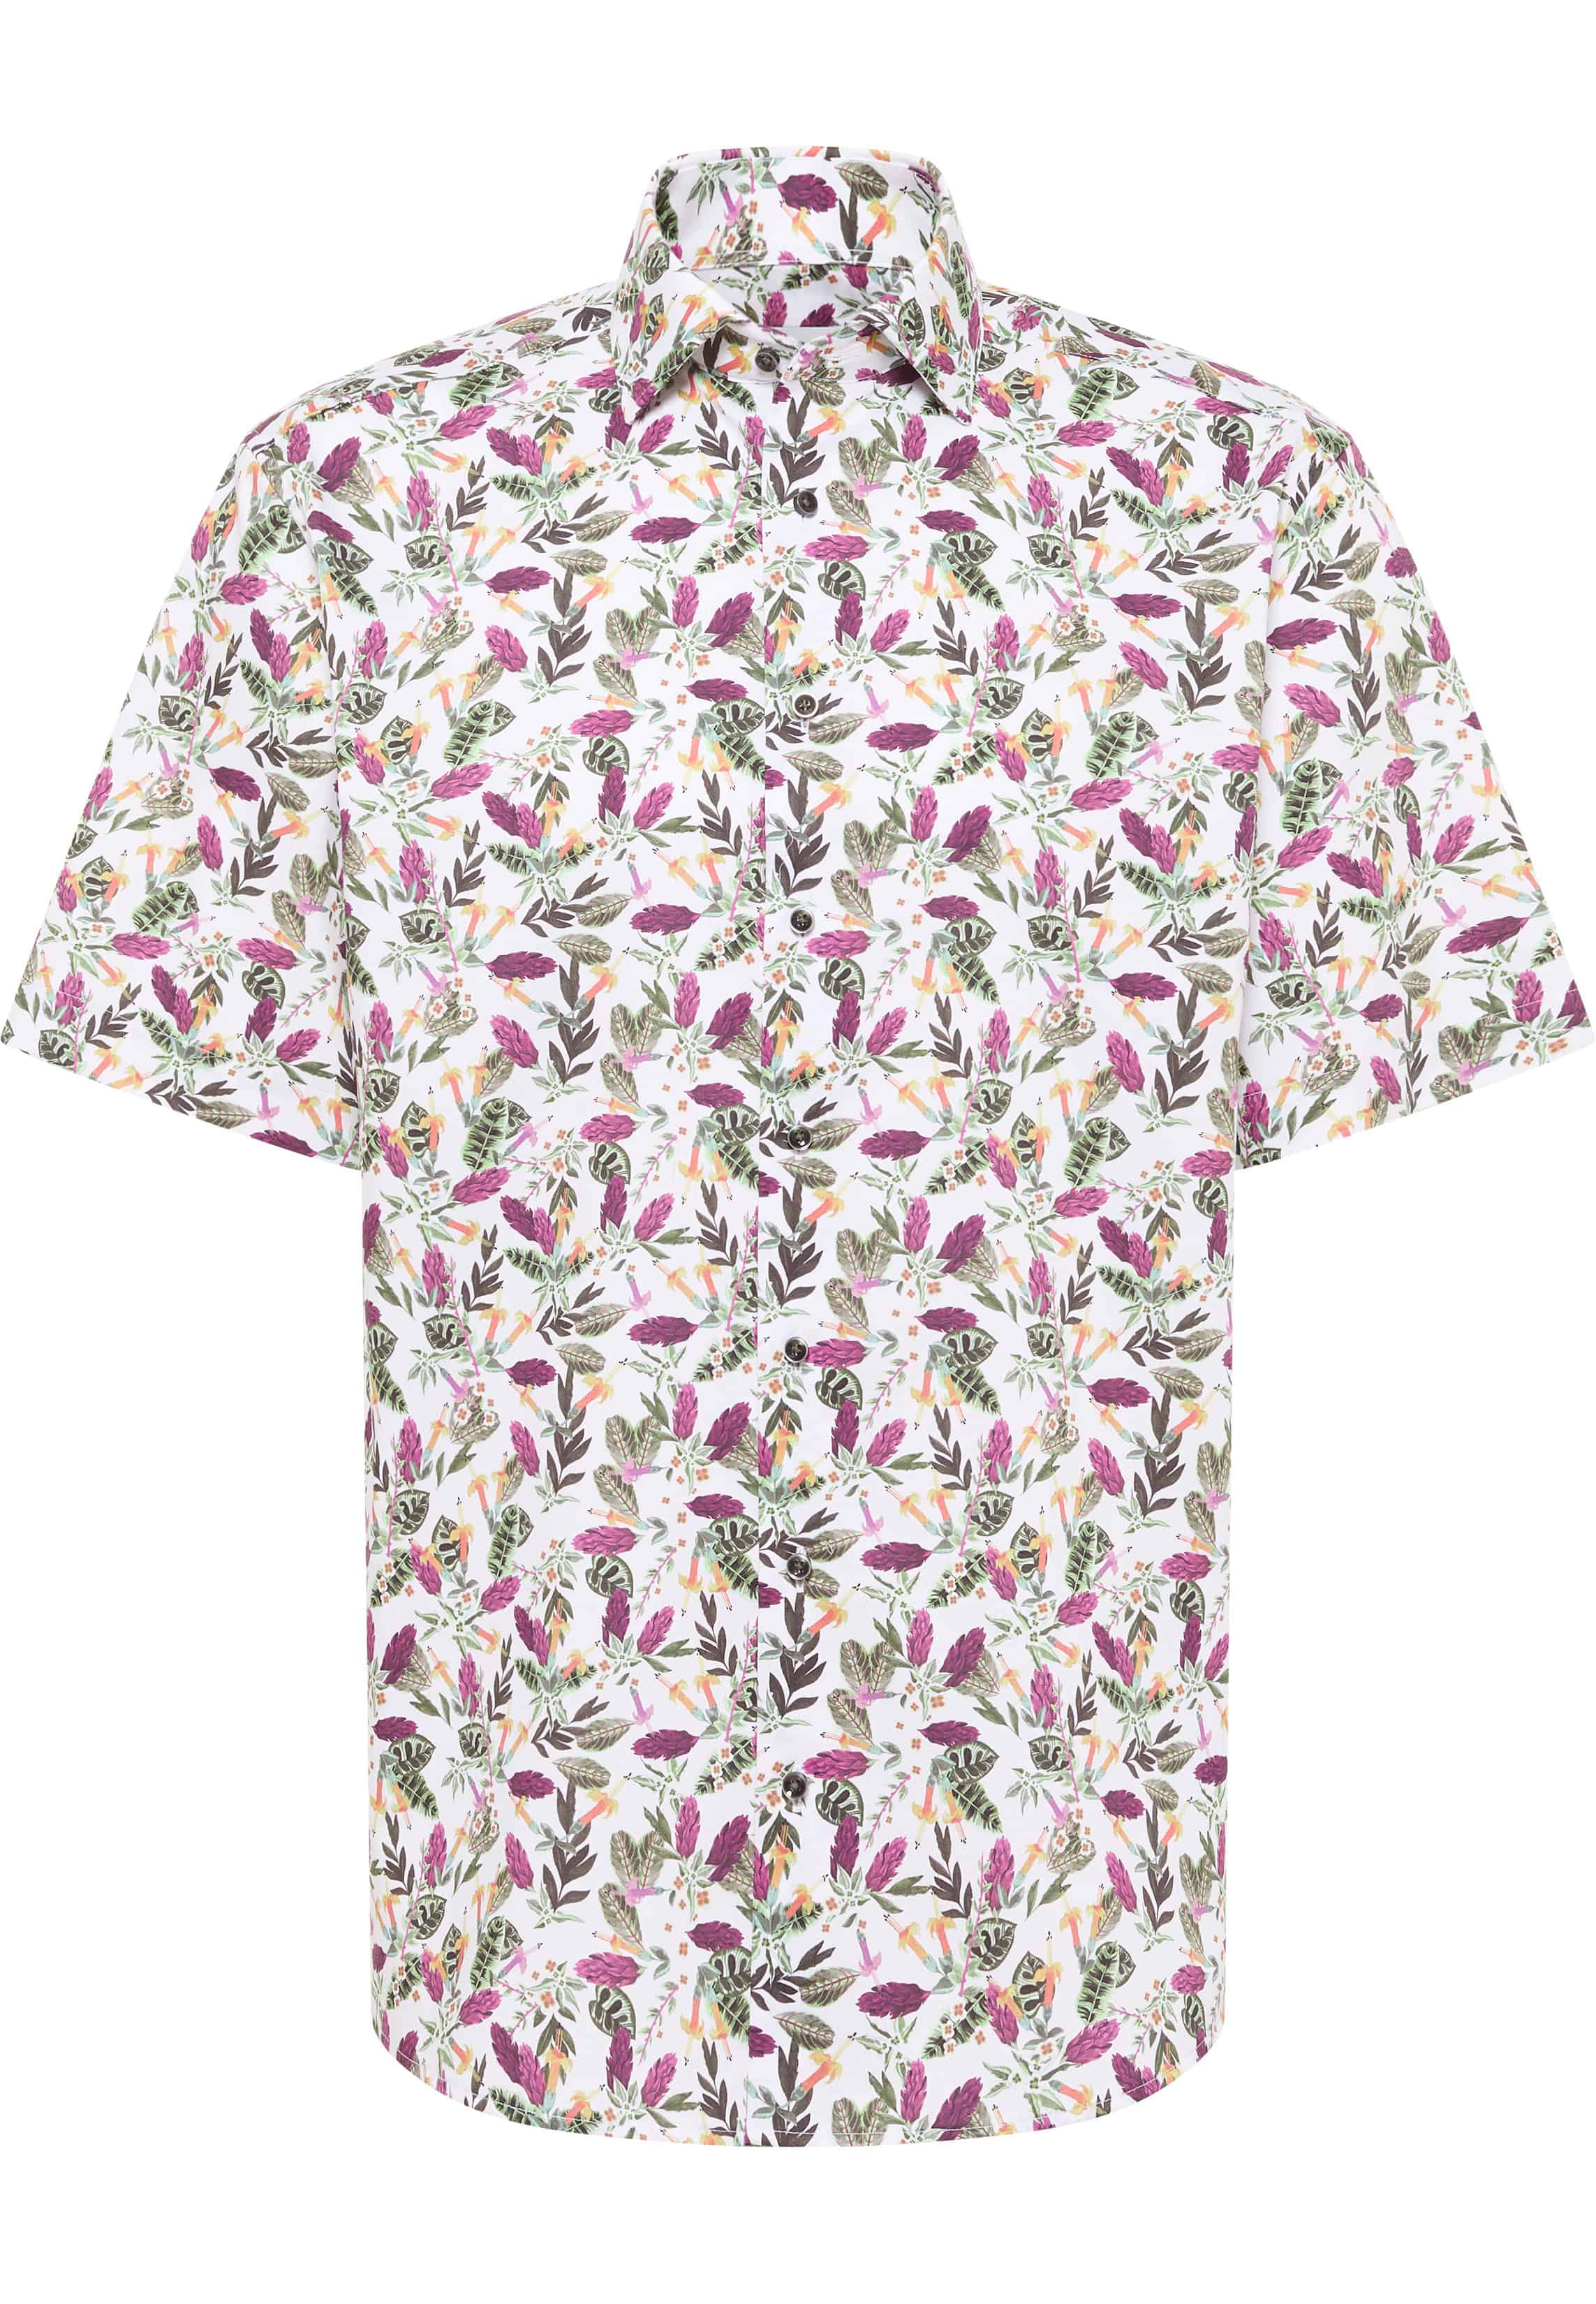 COMFORT FIT Shirt in magnolia printed